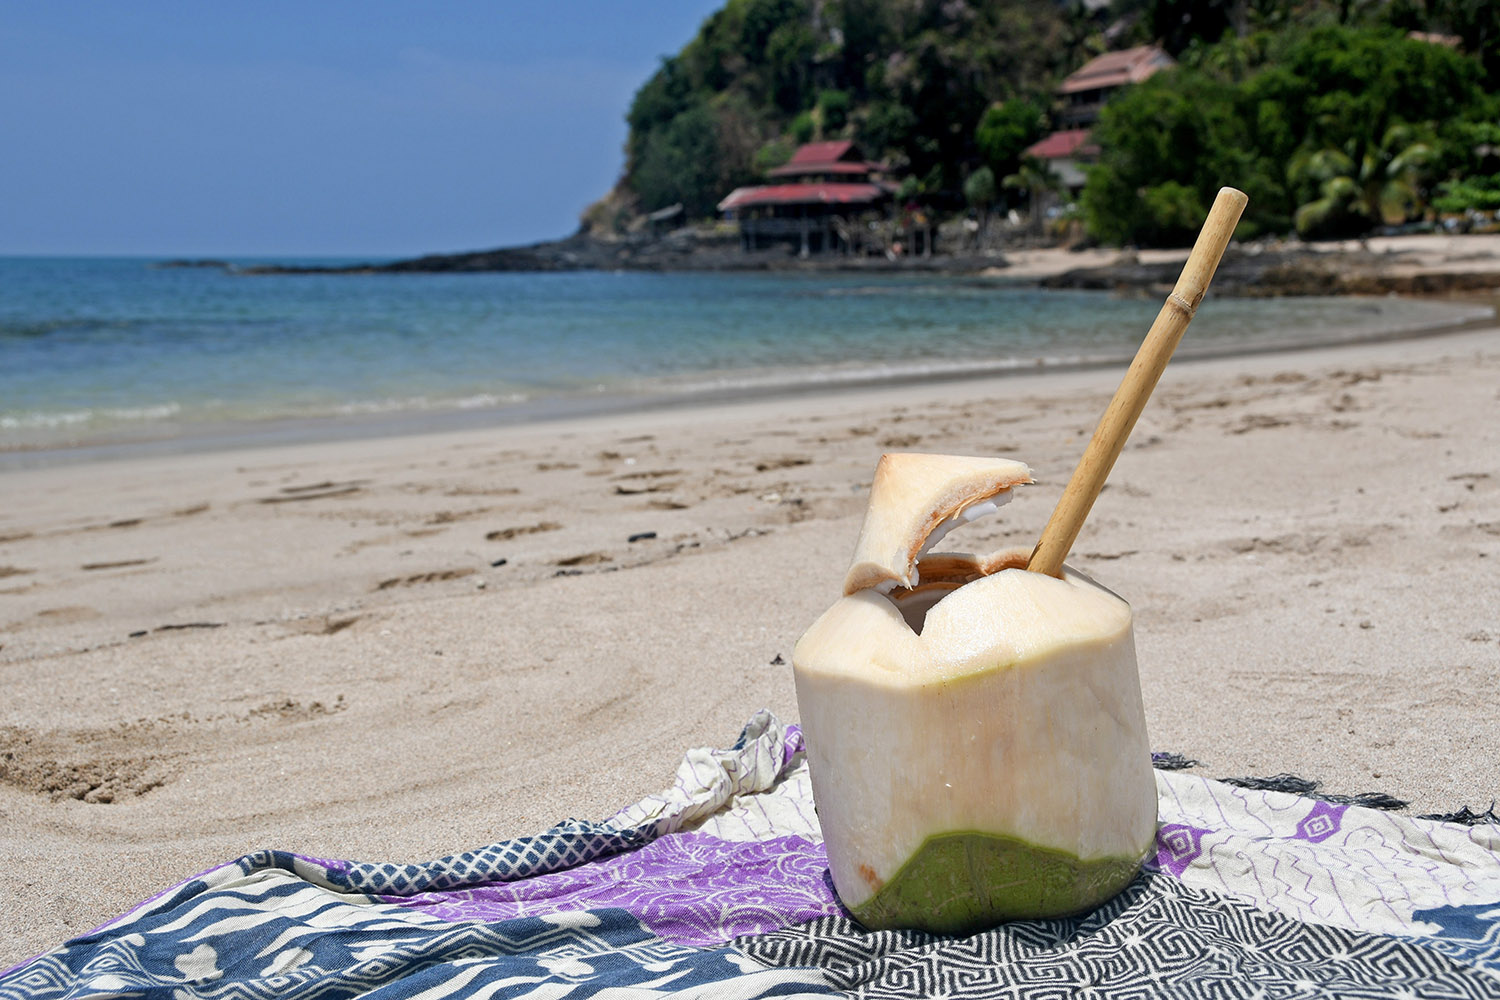 Things to do in Koh Lanta Thailand Beaches